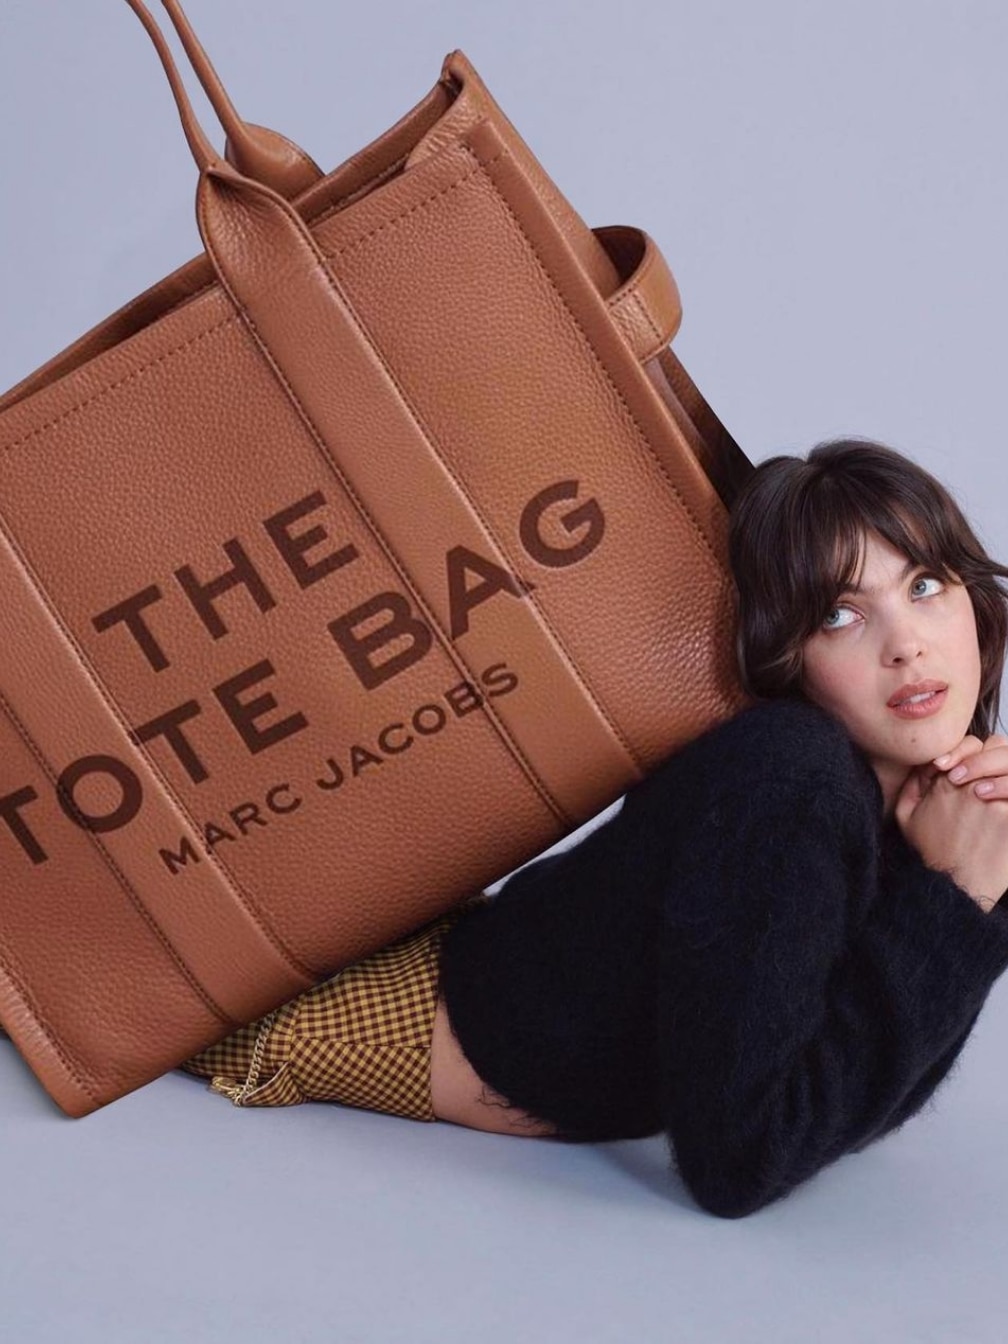 Bags we love — theBigBagClub